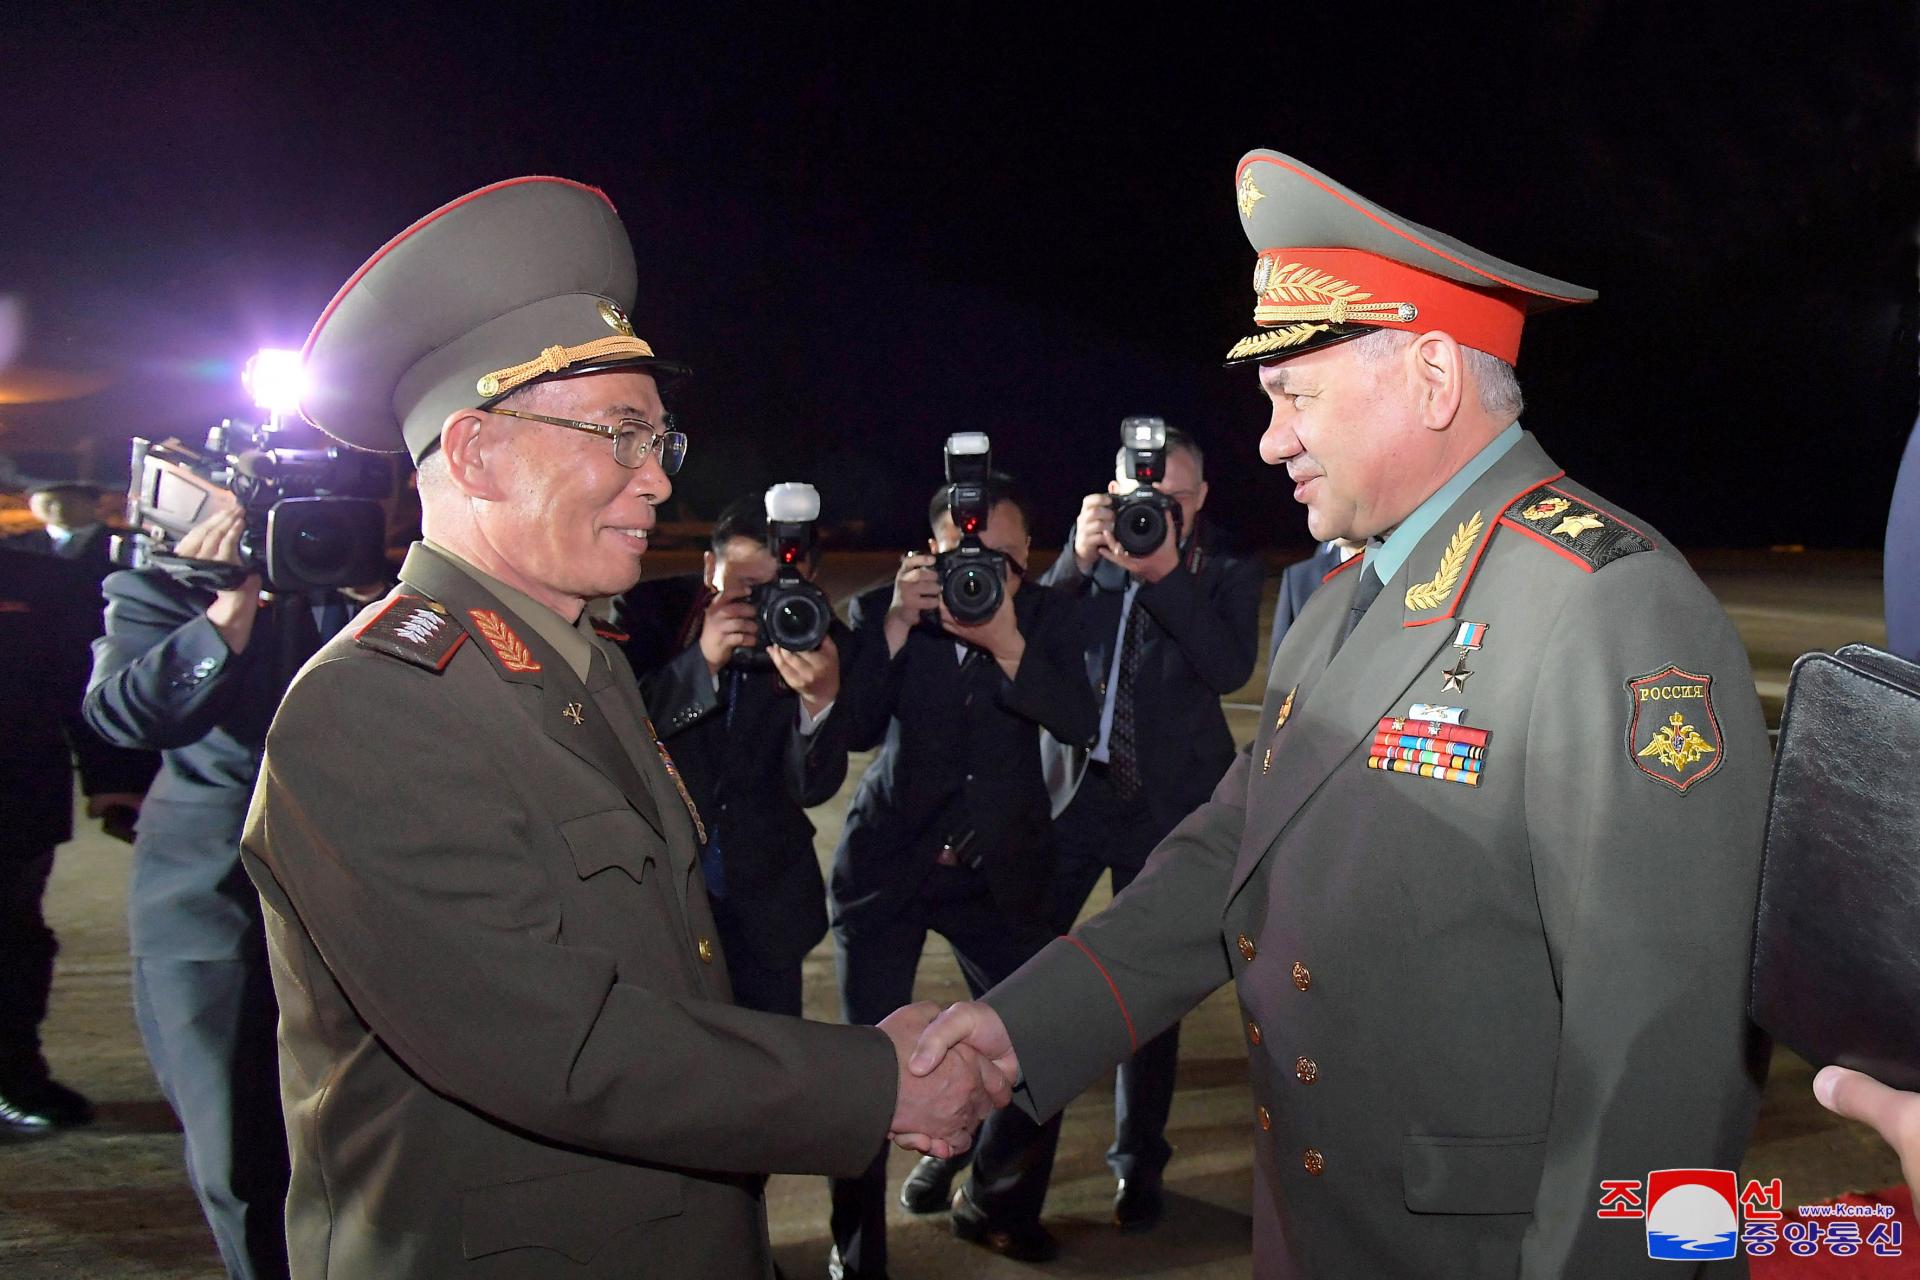 Ruská delegácia vedená ministrom obrany Šojguom pricestovala do Severnej Kórey